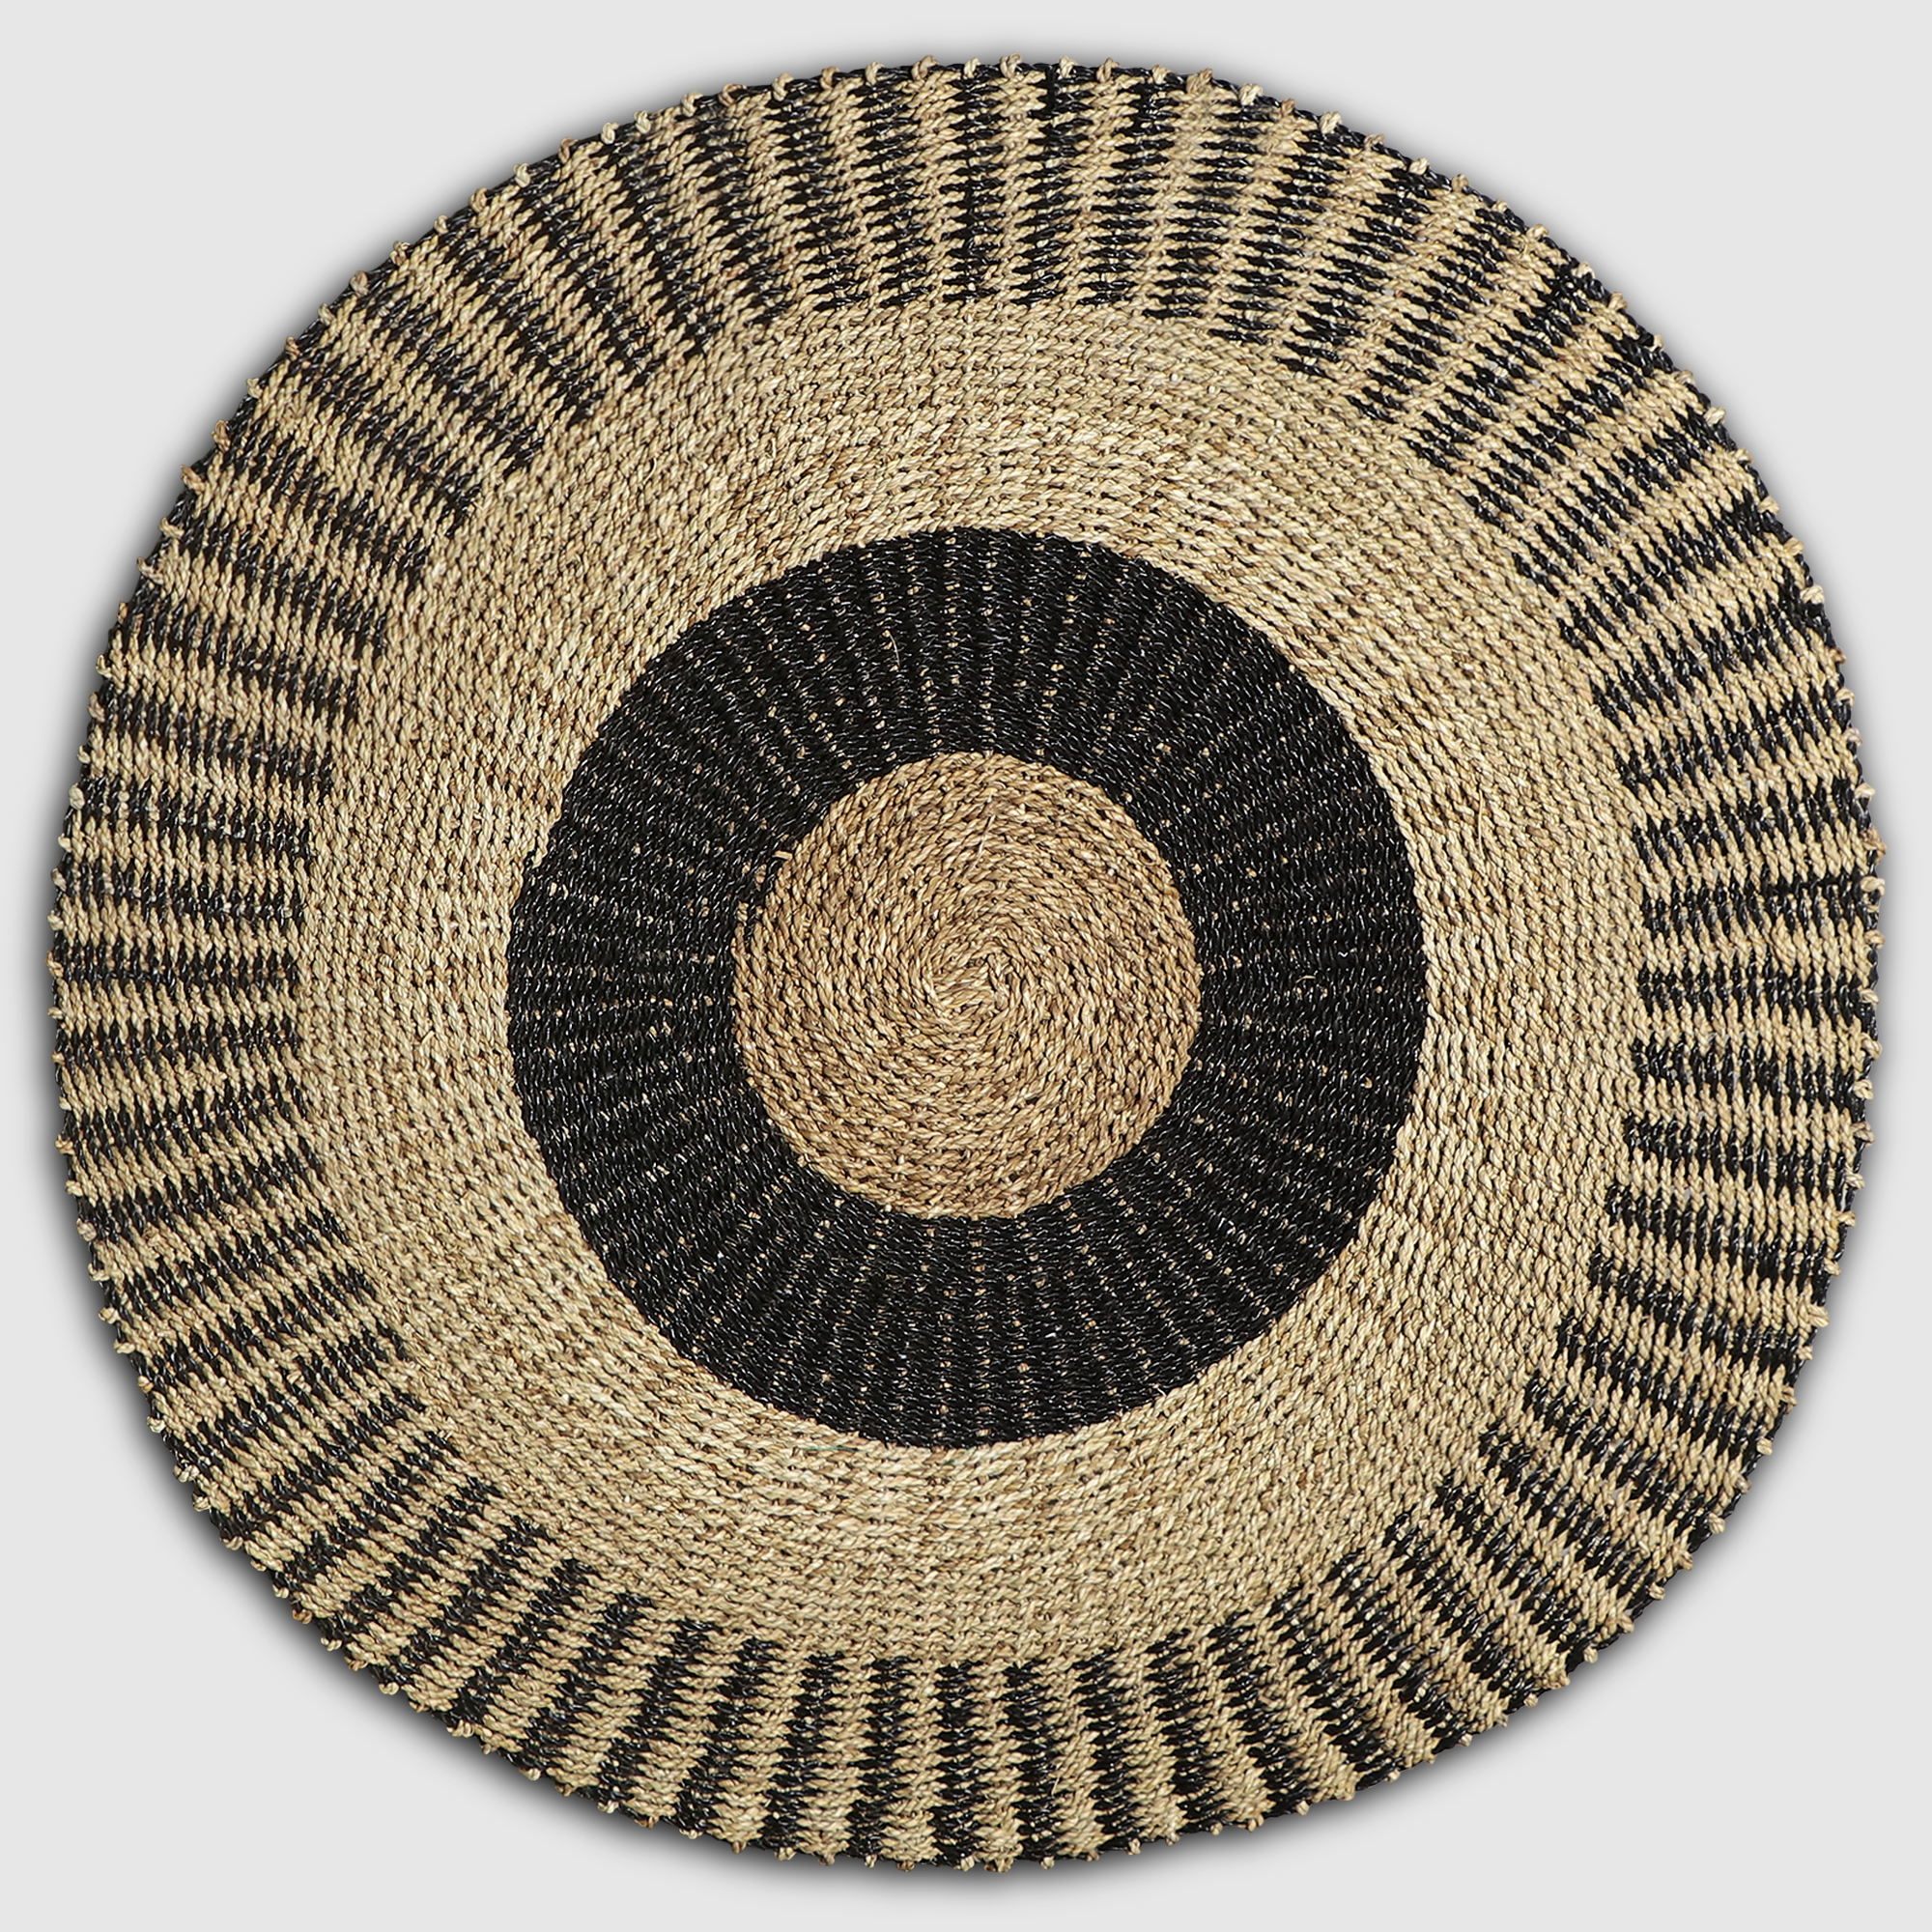 Коврик Rattan grand rug tenun nagan в полоску черного и коричневого цвета, д 120 см